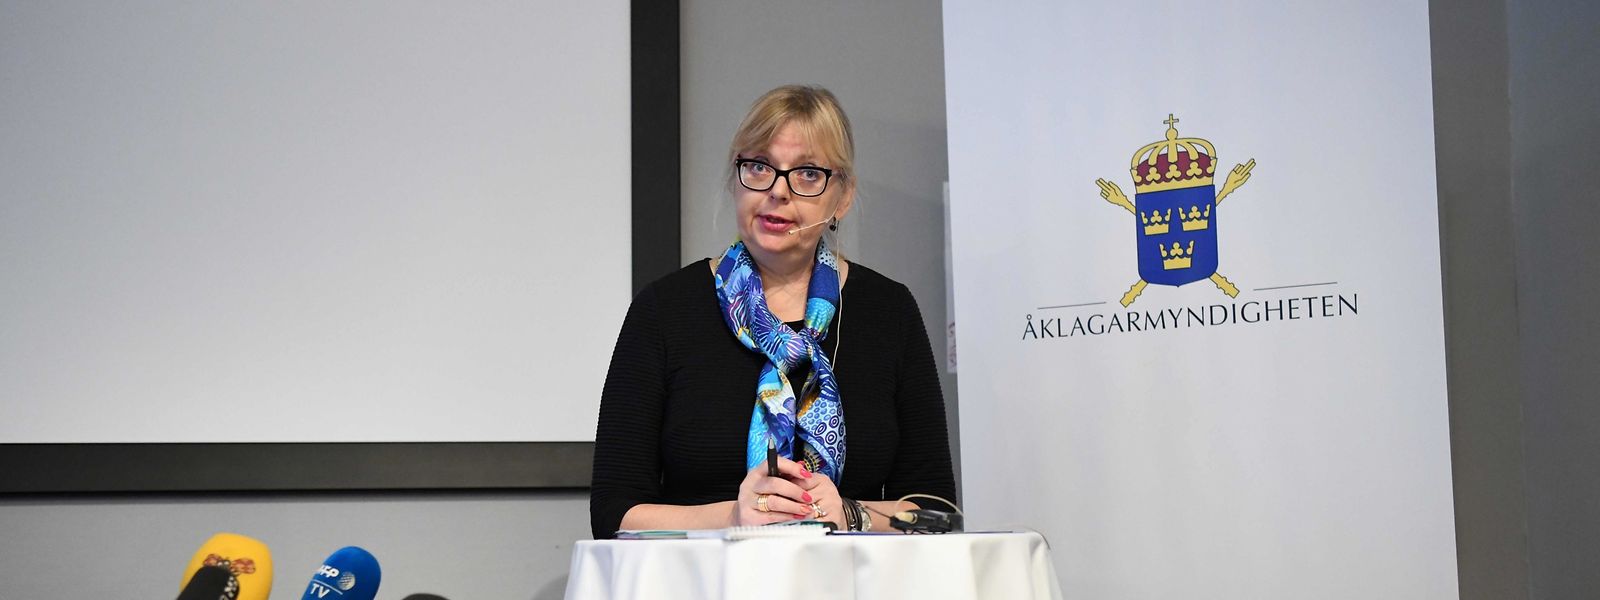 Eva-Marie Persson, die stellvertretende Direktorin der schwedischen Strafverfolgung, bei der Pressekonferenz am Dienstag.